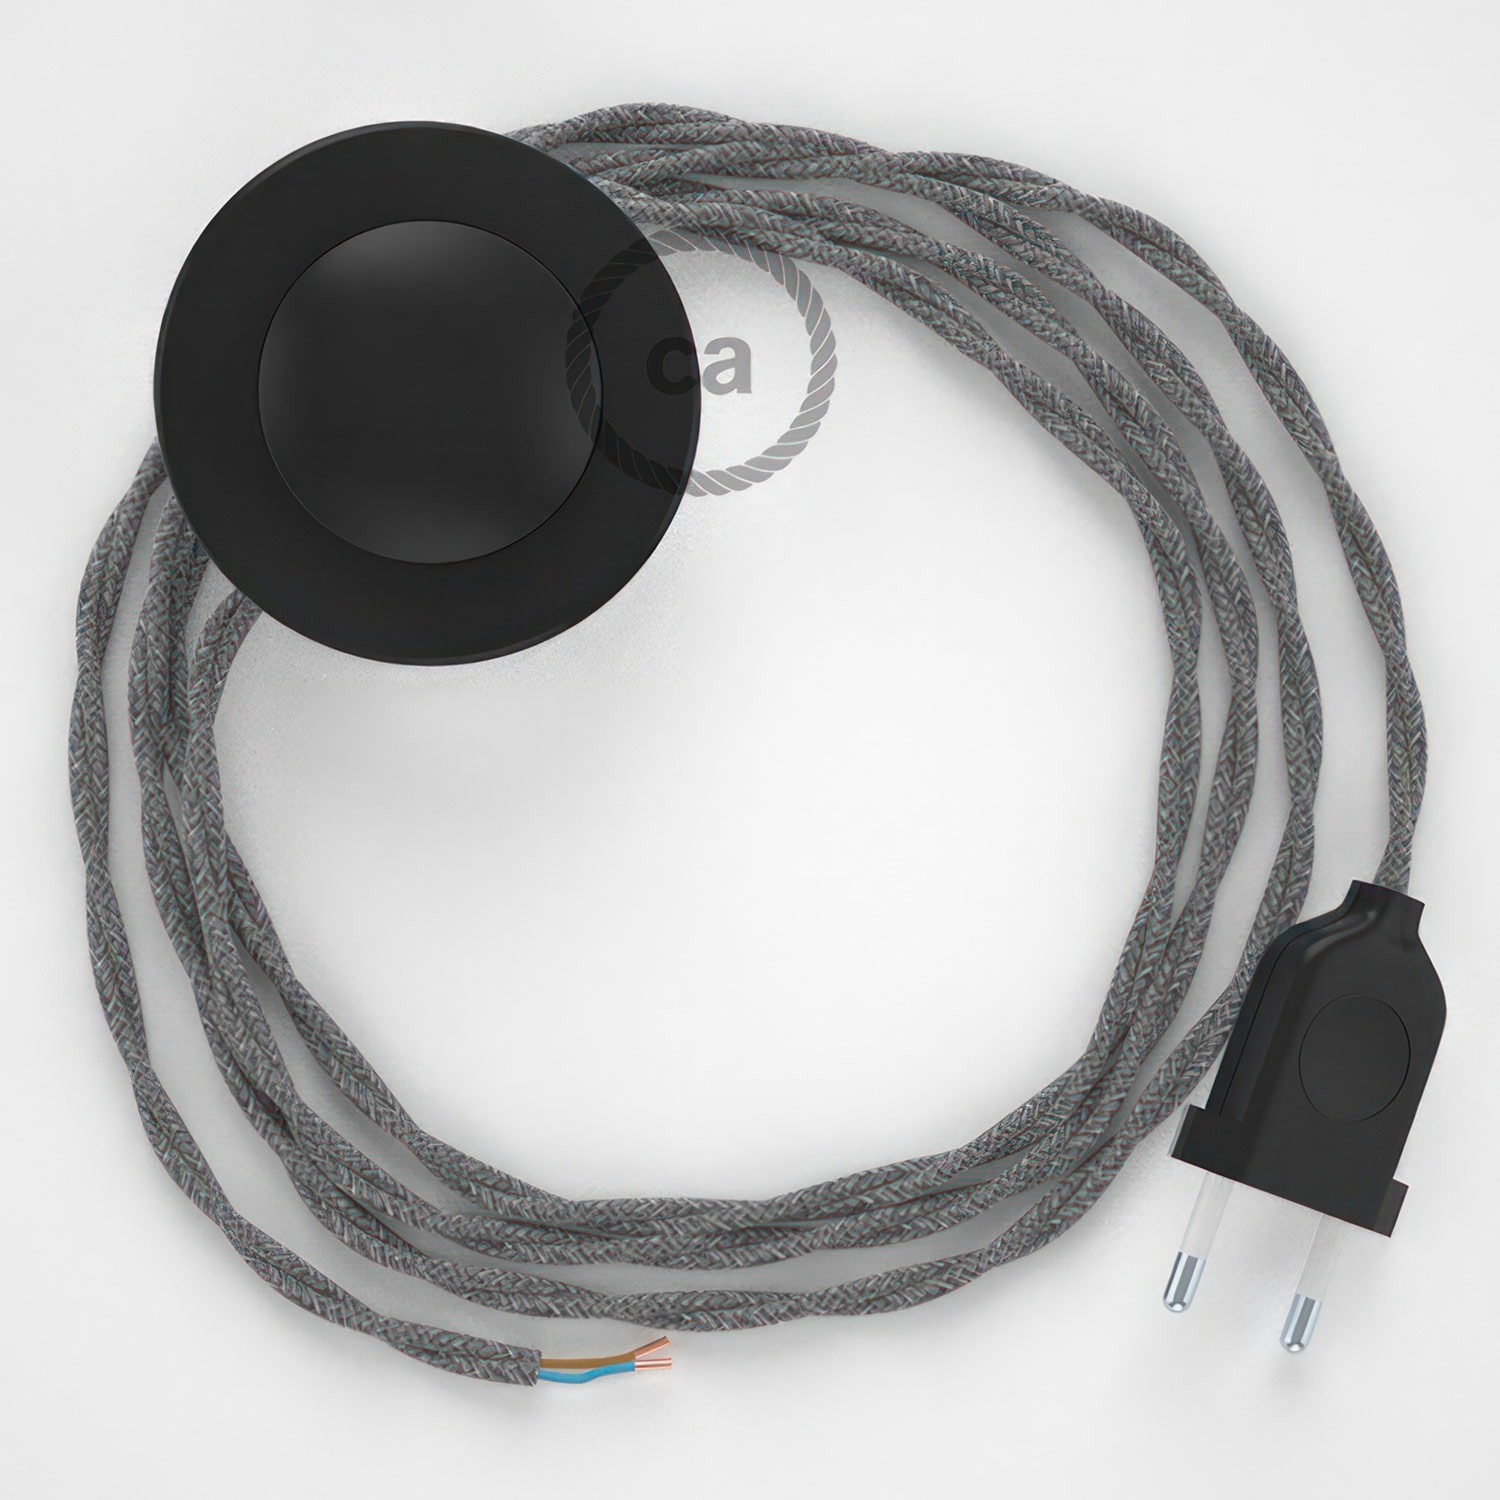 Cableado para lámpara de pie, cable TN02 Lino Natural Gris 3 m. Elige tu el color de la clavija y del interruptor!